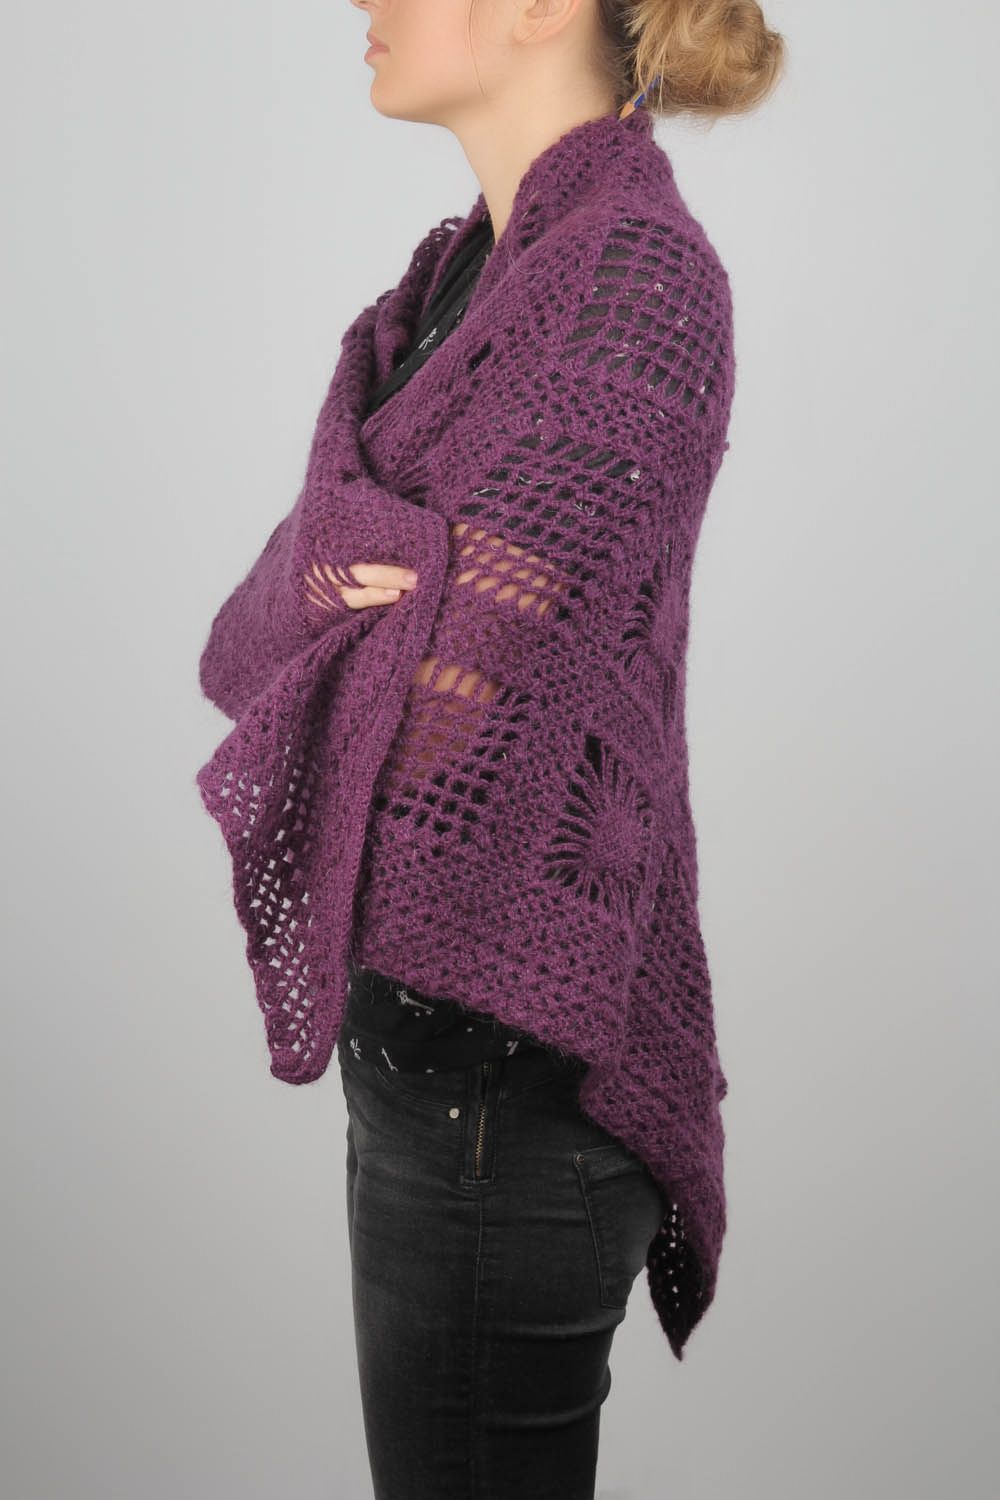 Châle tricoté main en fils de laine violets photo 5